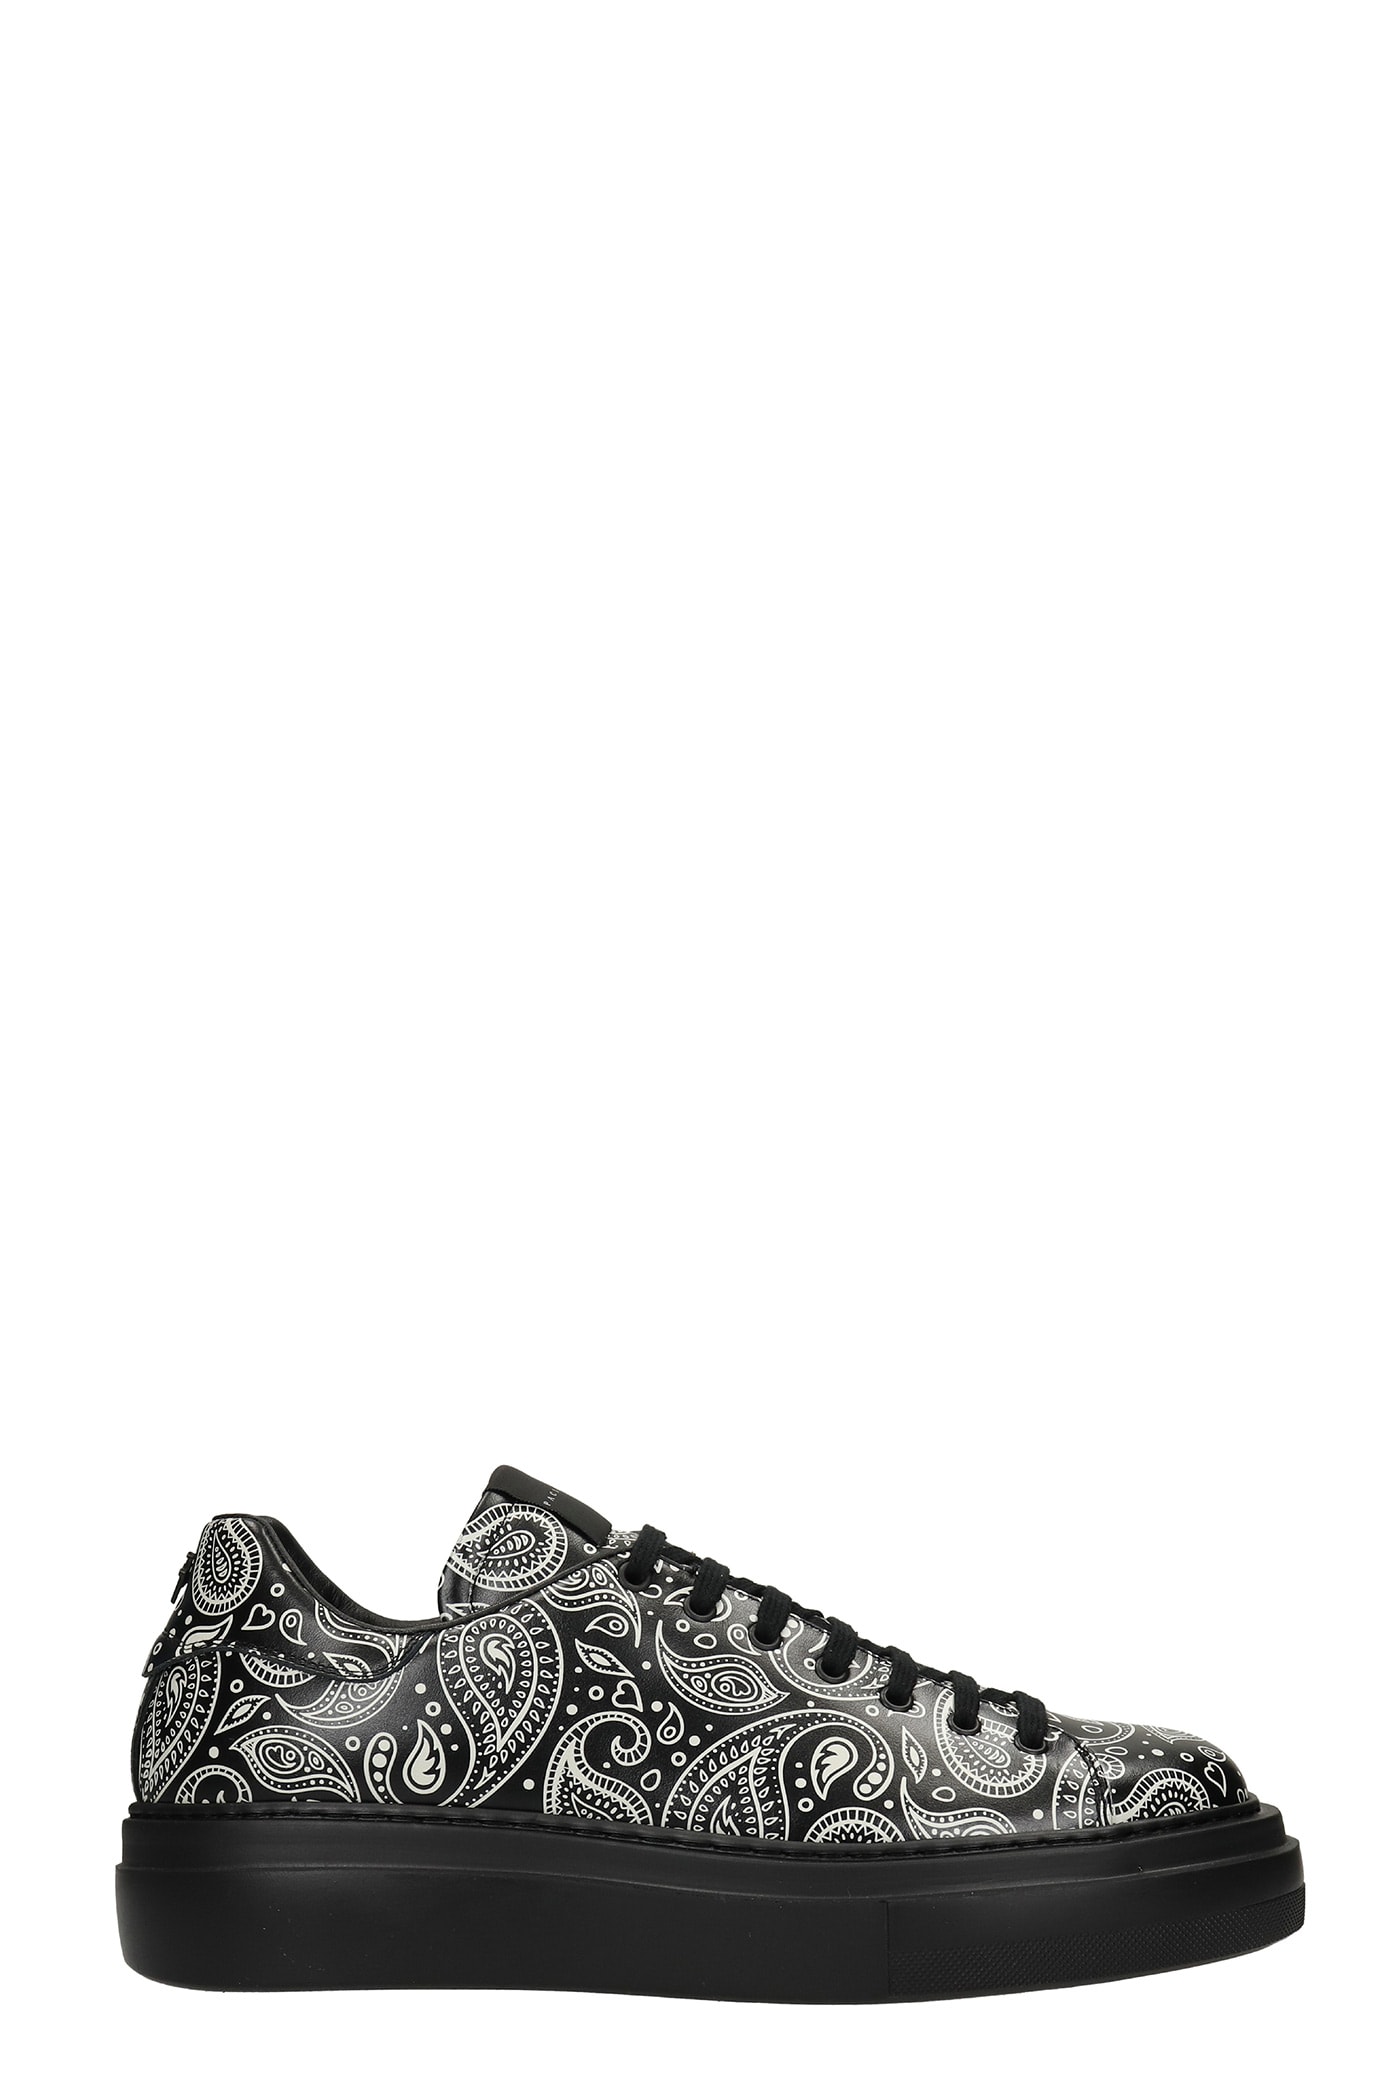 Cesare Paciotti Bandana Print Sneakers In Black Leather